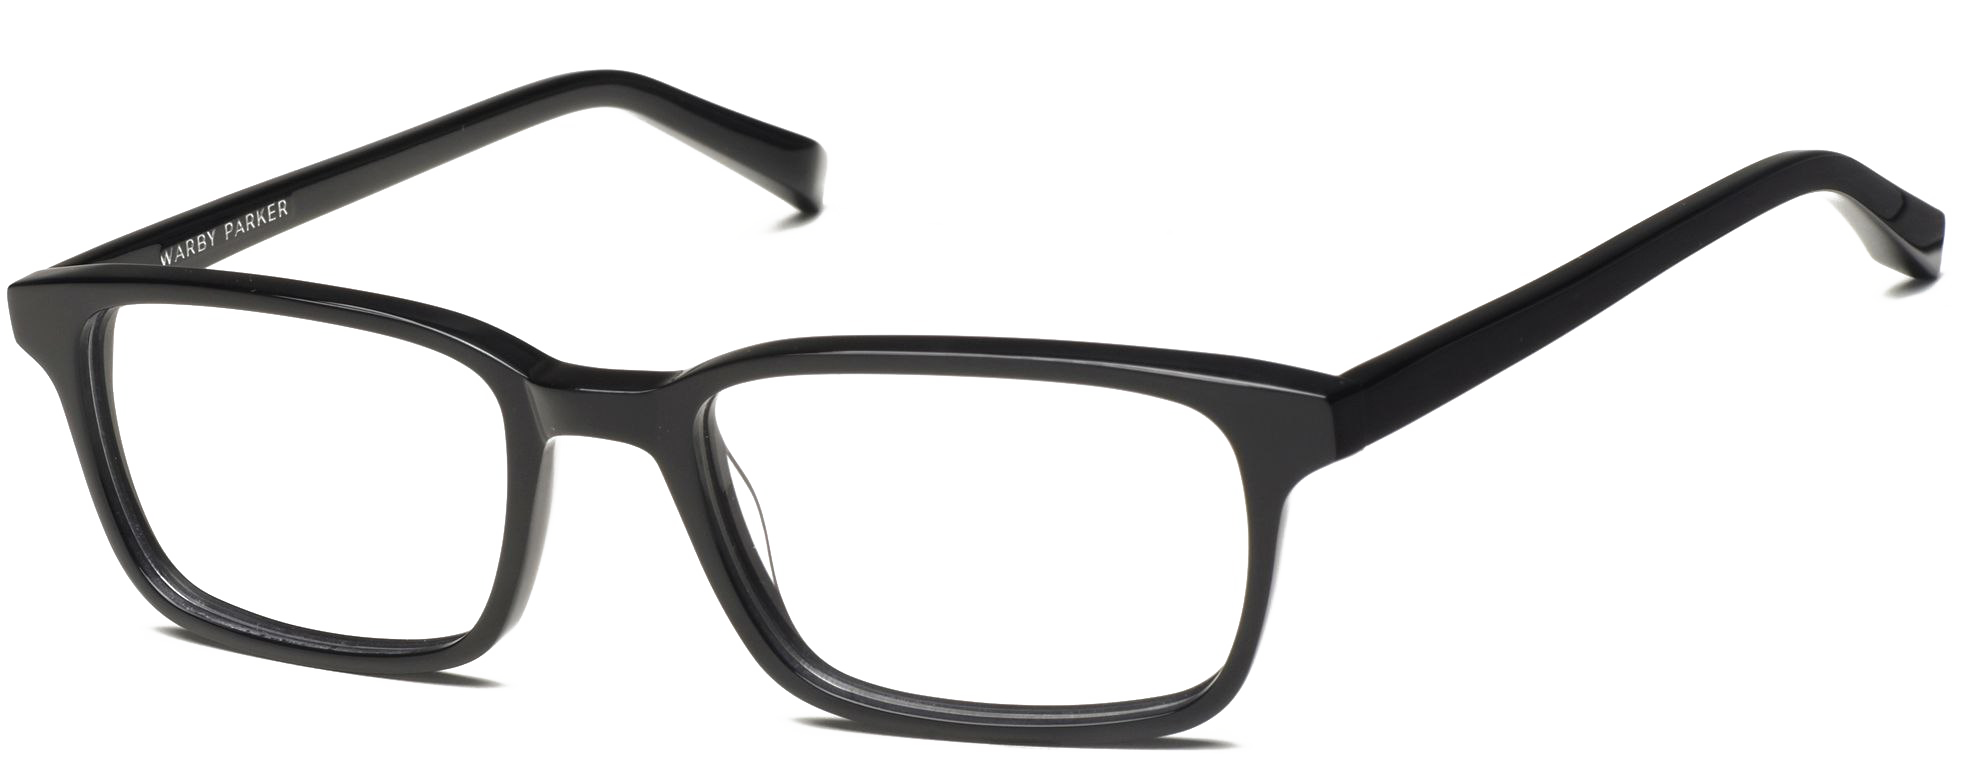 Black Glasses PNG Background Image